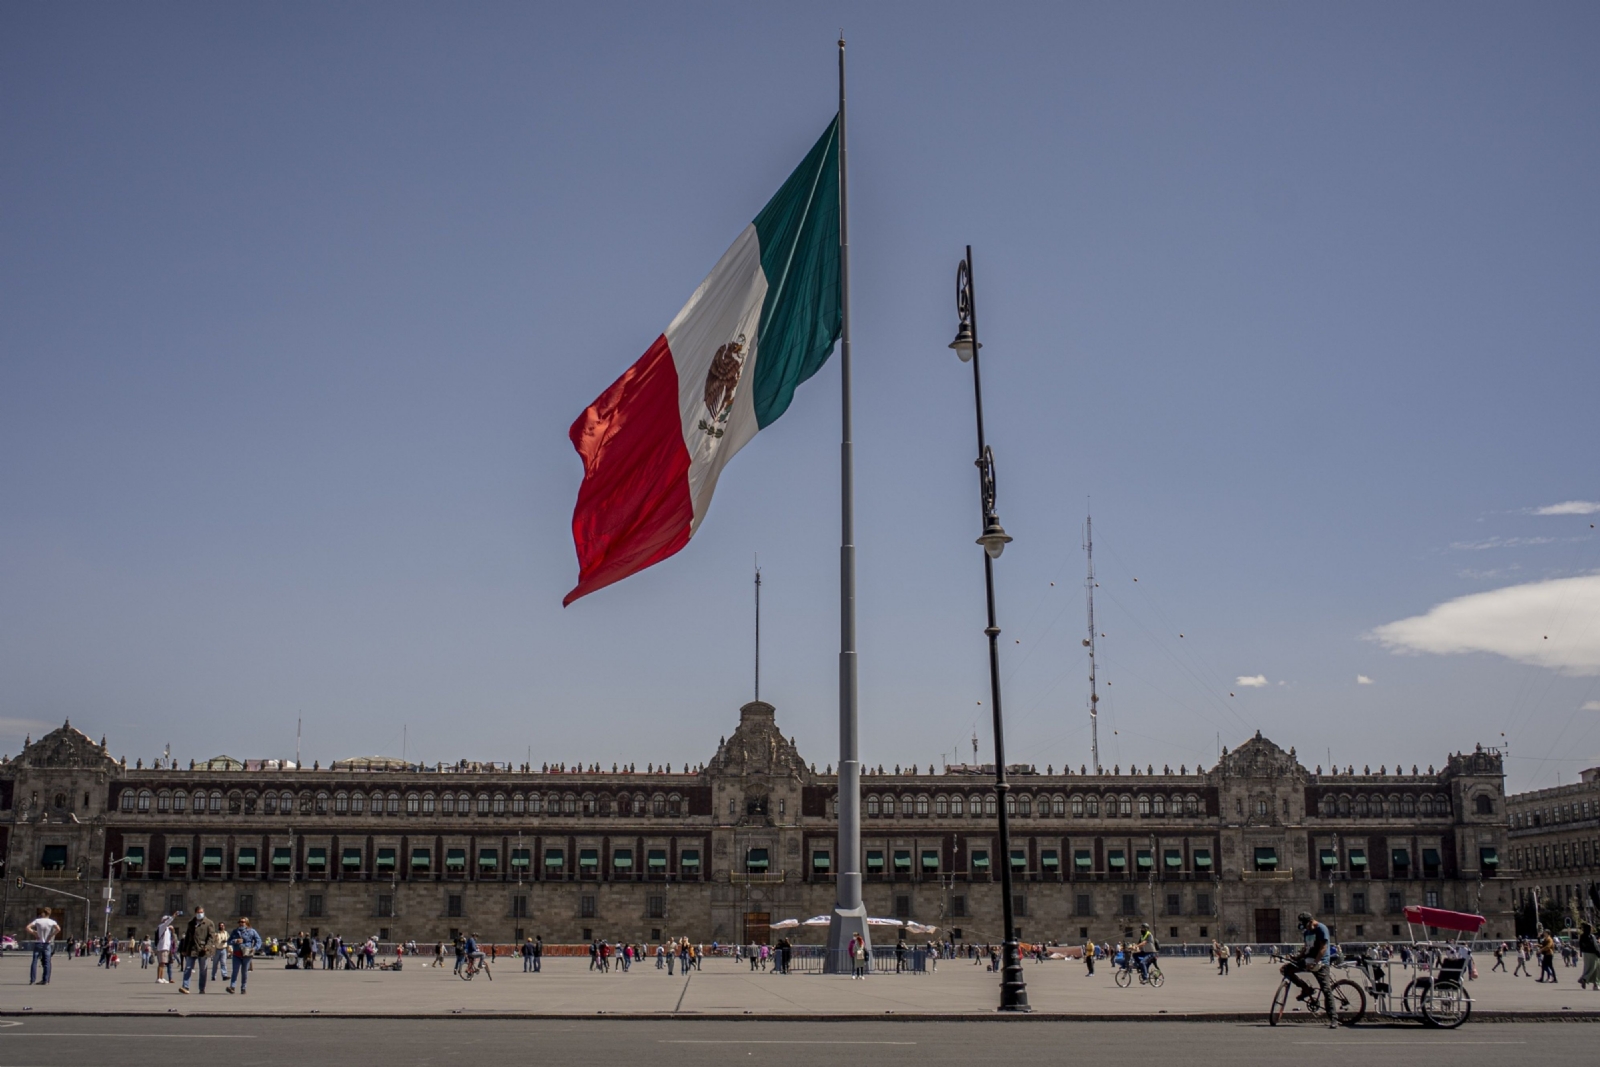 Japan Credit Rating Agency ratifica calificación crediticia de México